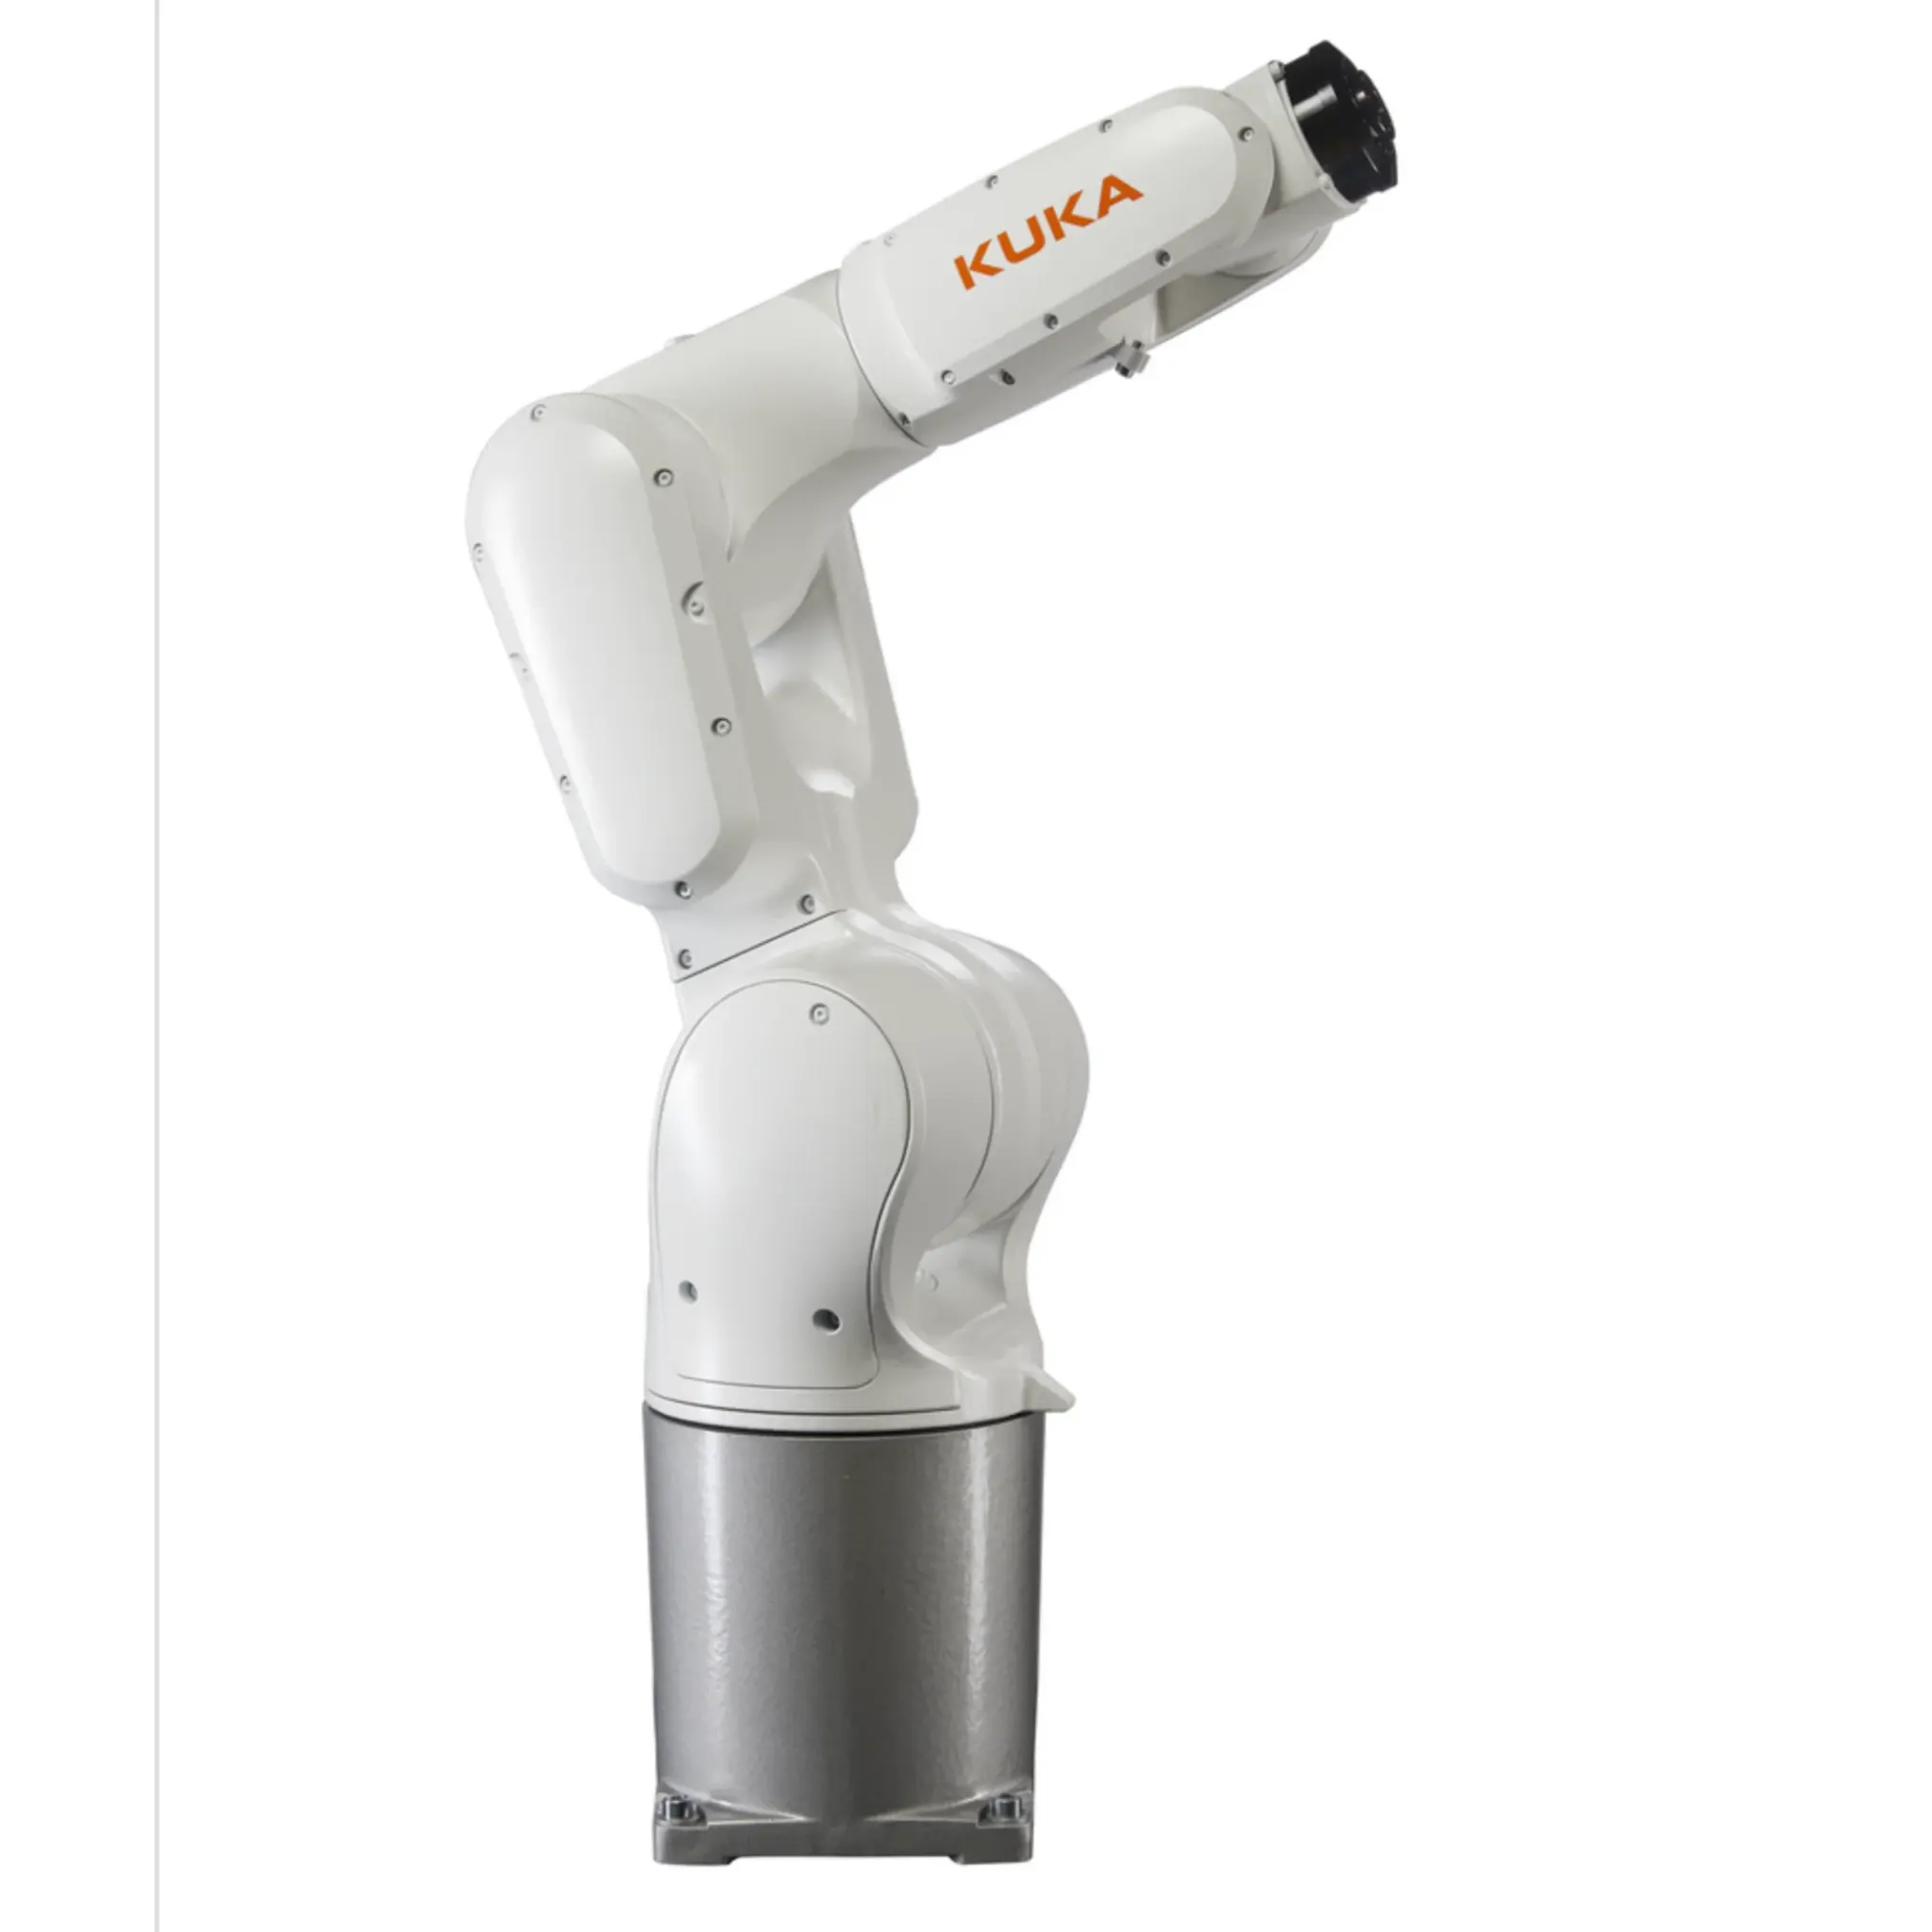 Robot Industri KUKA KR6 R900 6 poros, tampilan jalur produksi RobotiQ dengan Gripper untuk Robot kuka palletisasi